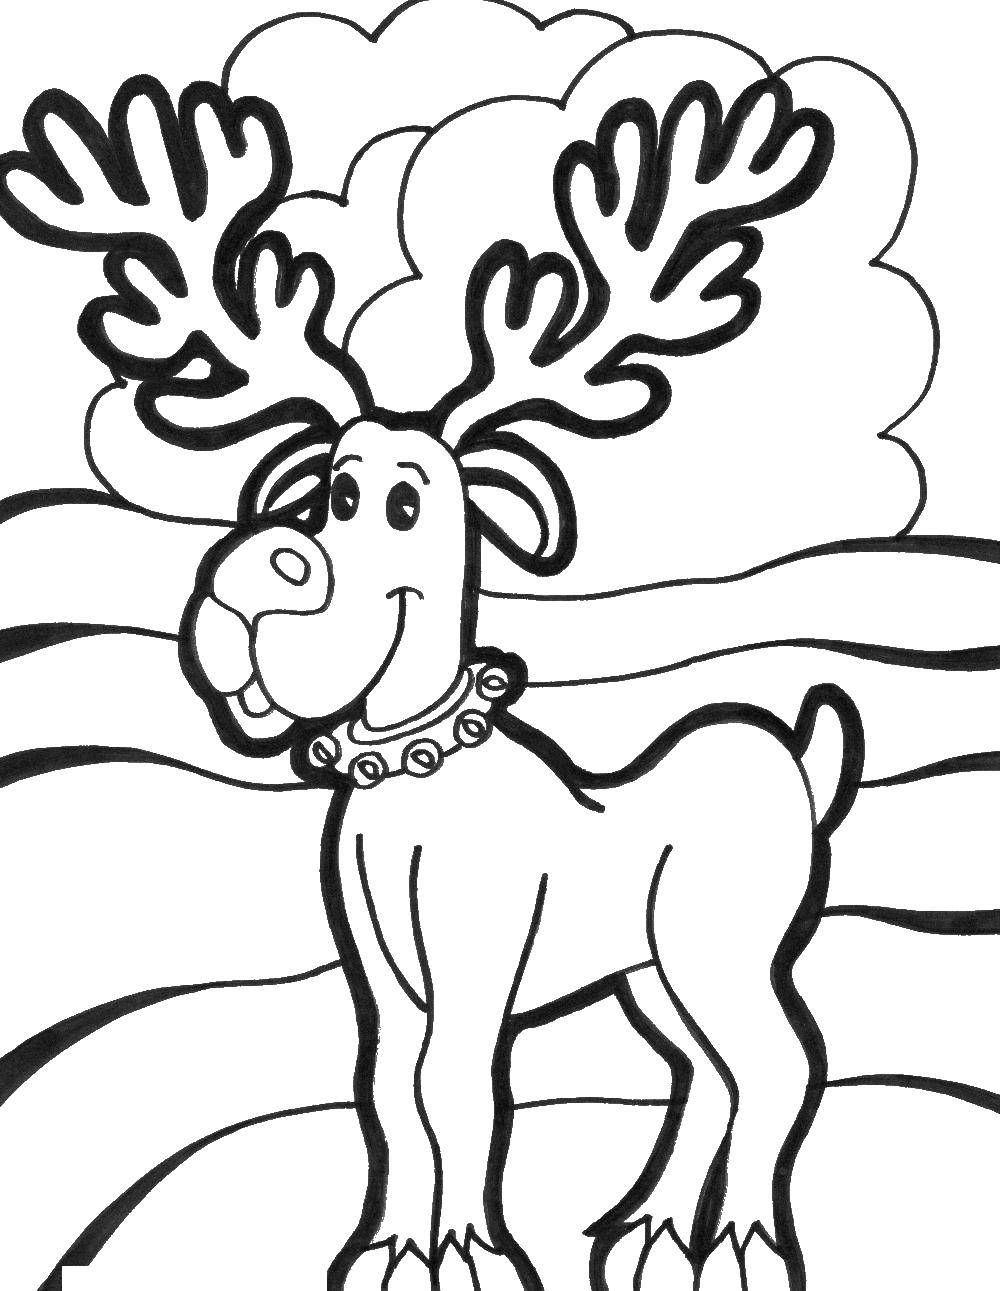 Coloring Christmas deer. Category Christmas. Tags:  reindeer, Christmas.